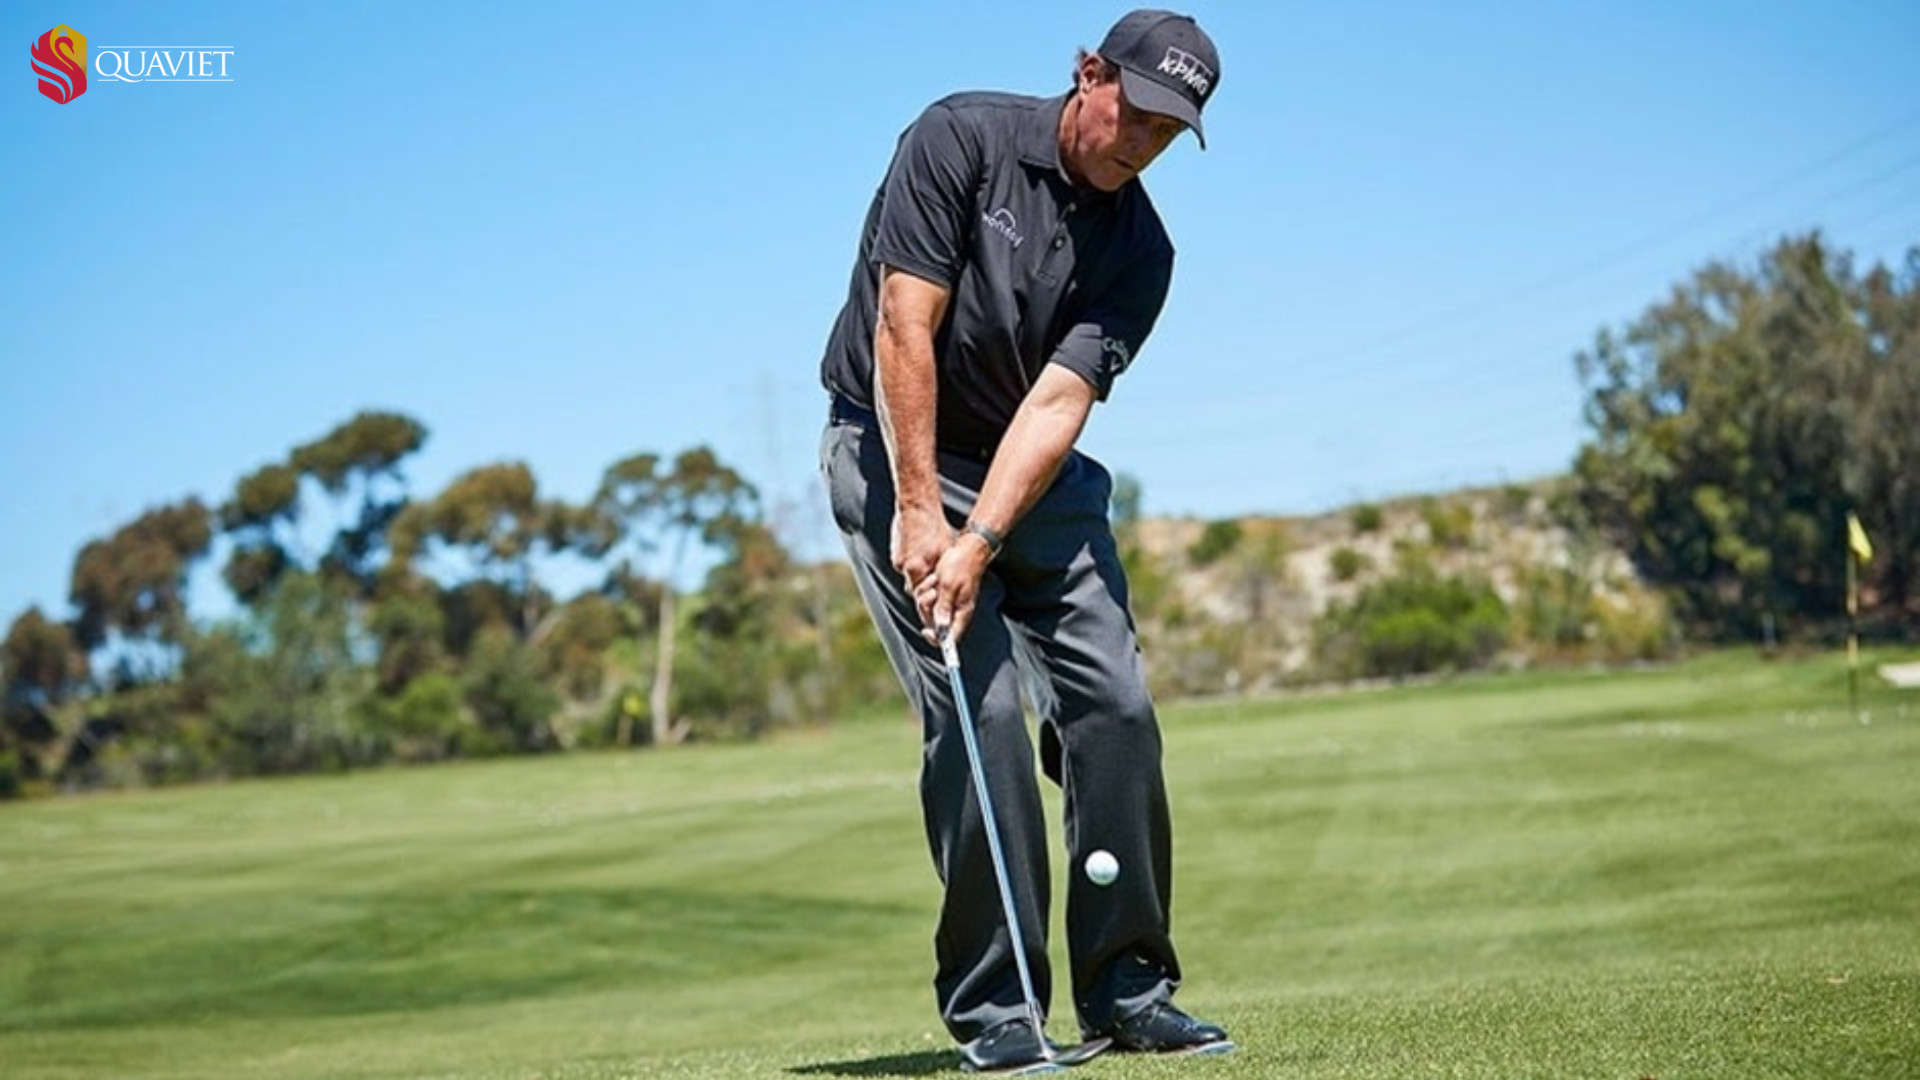 Kỹ thuật chipping golf là kỹ thuật đánh bóng xoay quanh vùng cỏ gần lỗ